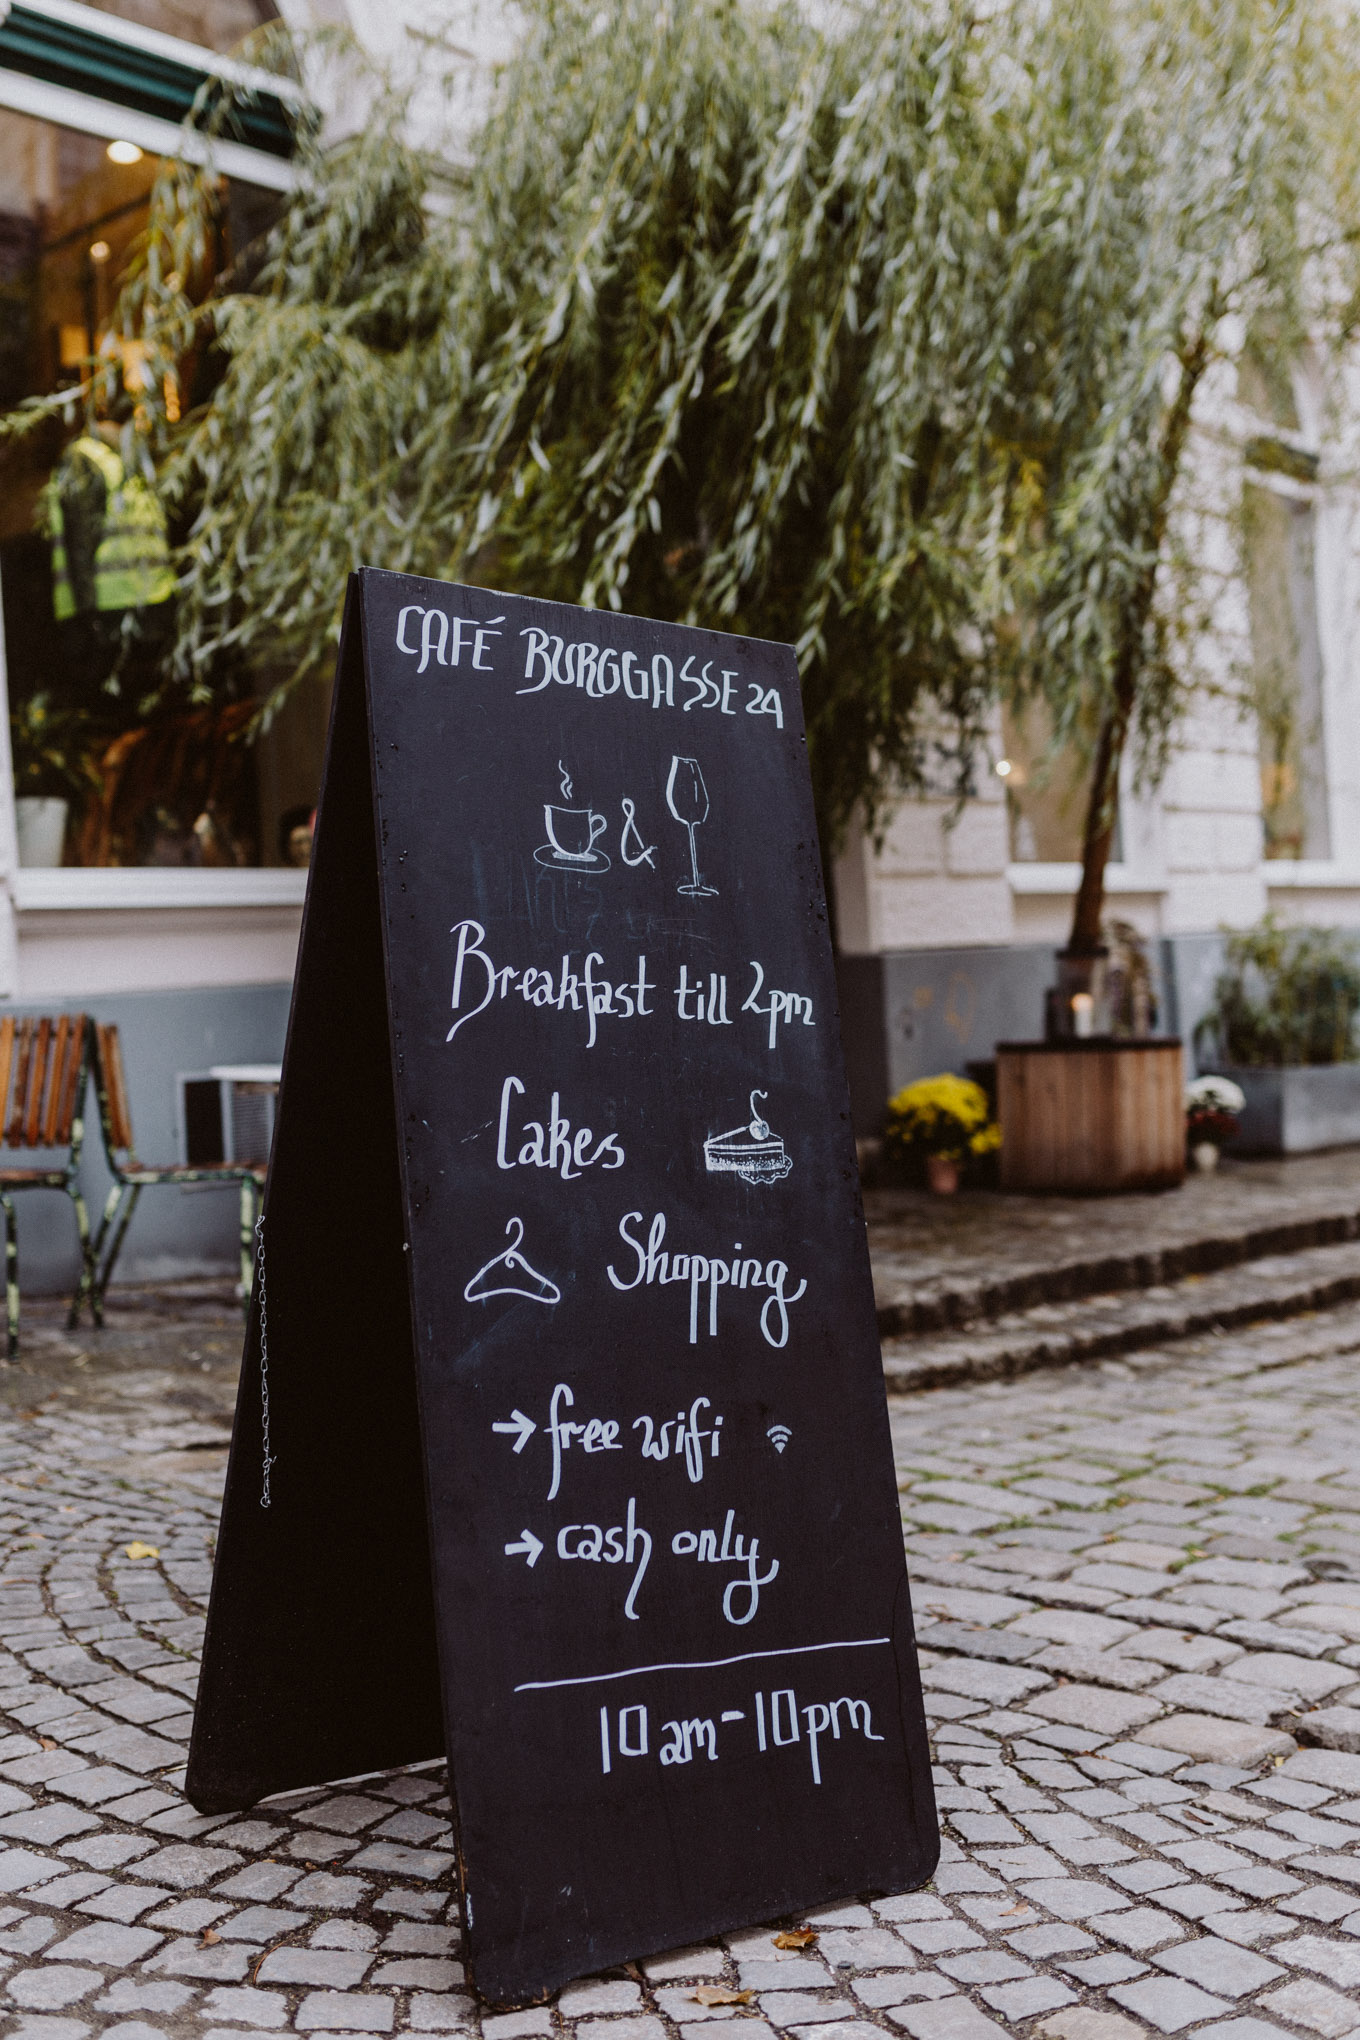 Vienna Picks: Café in der Burggasse 24 | The Daily Dose